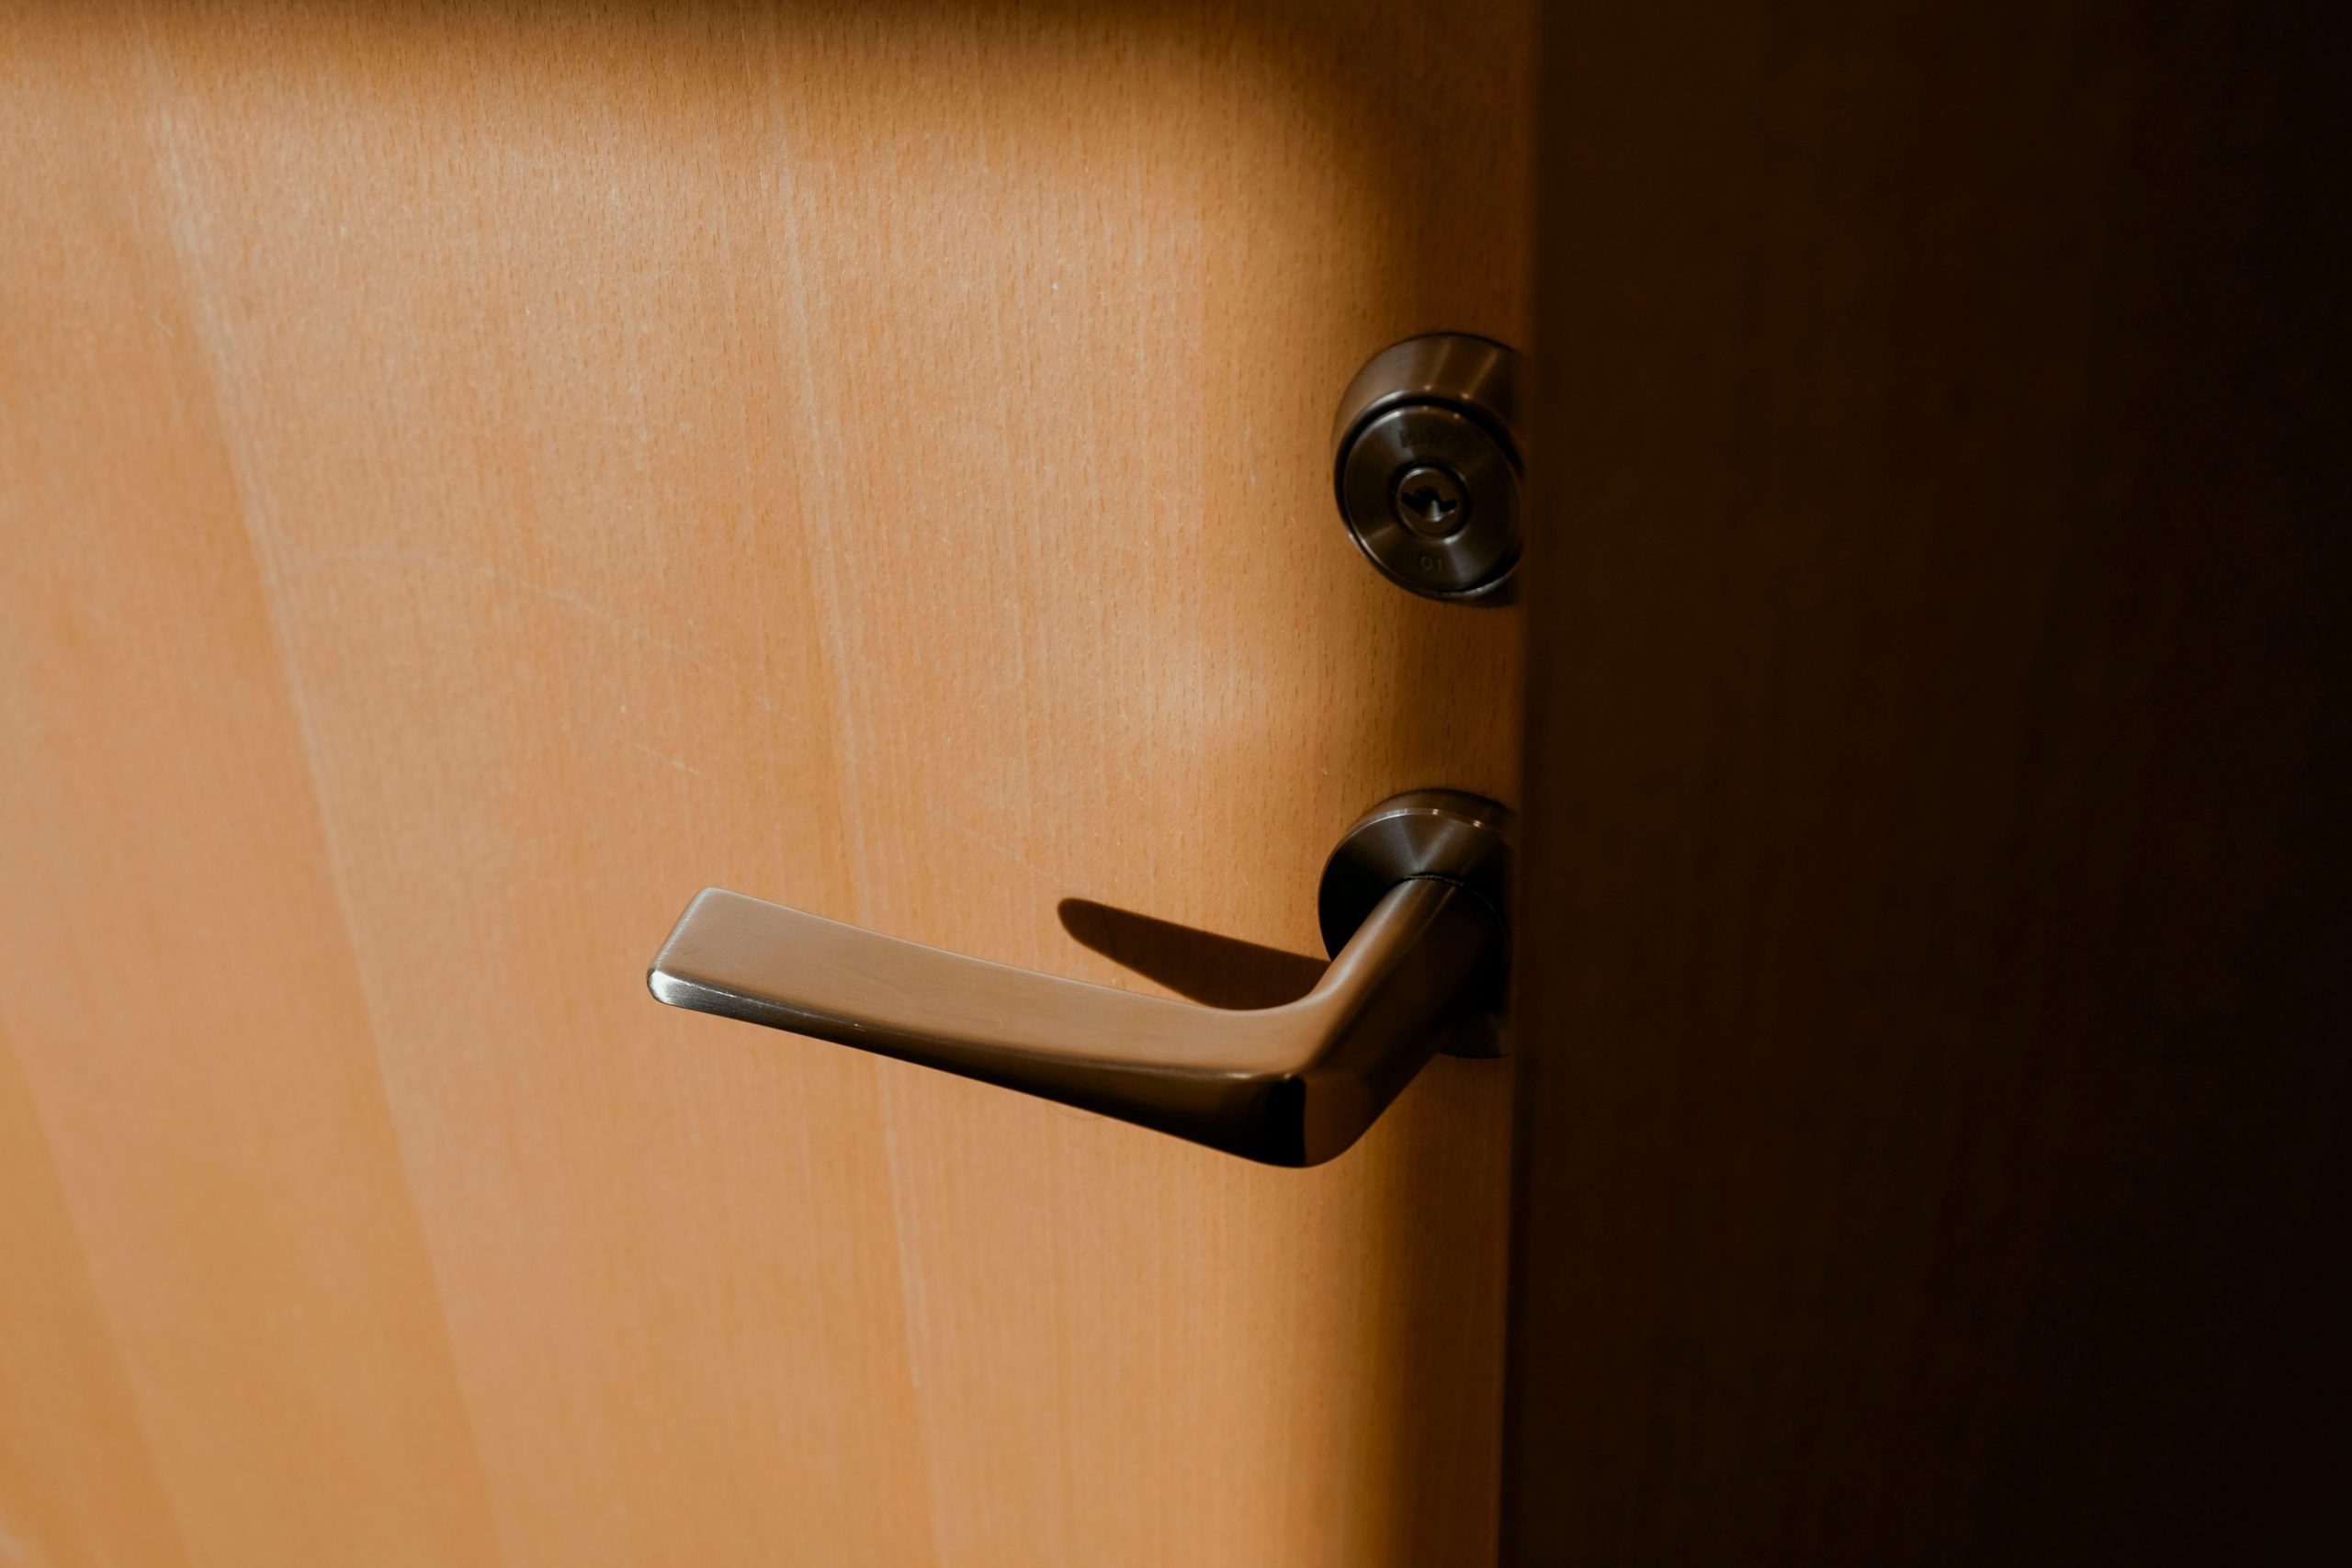 How to fit an interior door handle